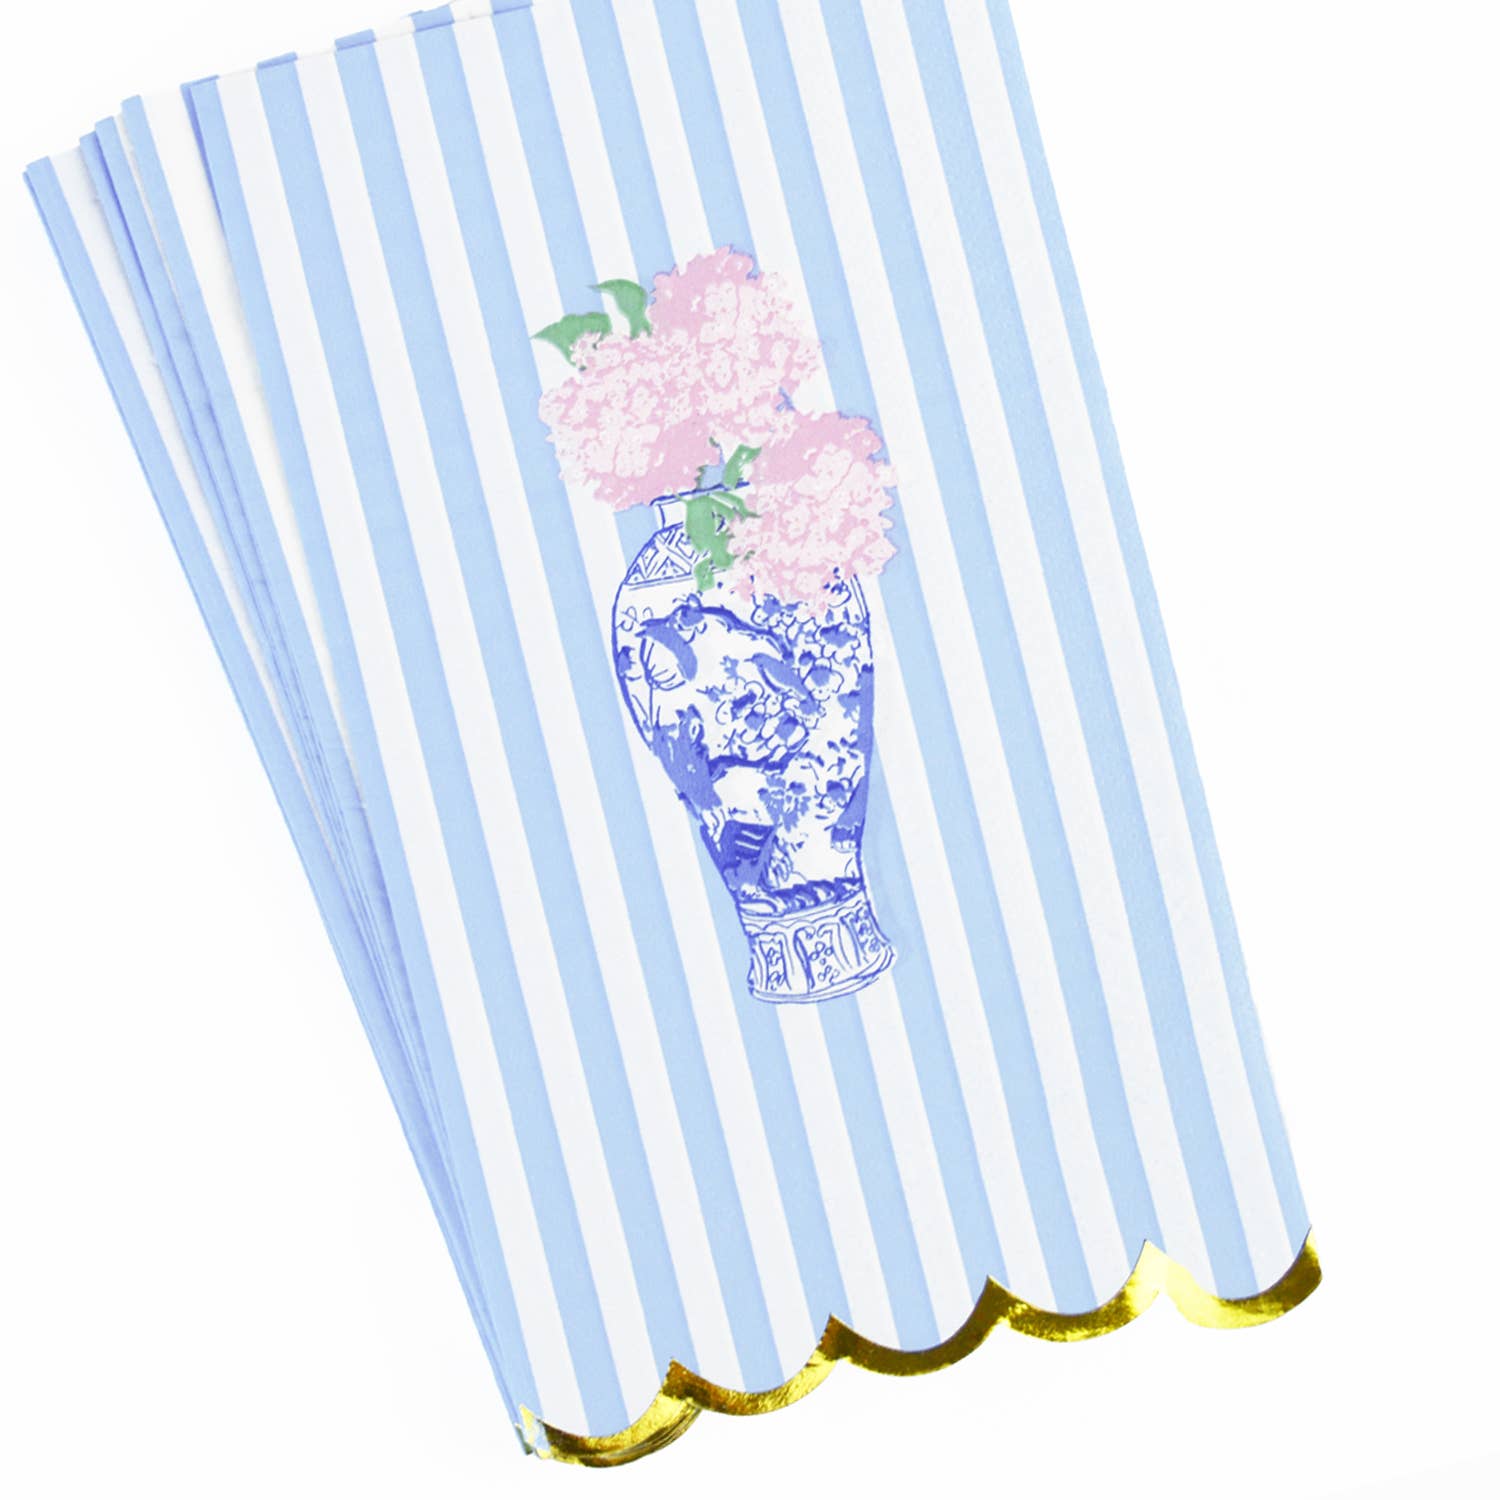 8 Oak Lane - Ginger Jar Floral Paper Guest Towel Packs - Little Birdies